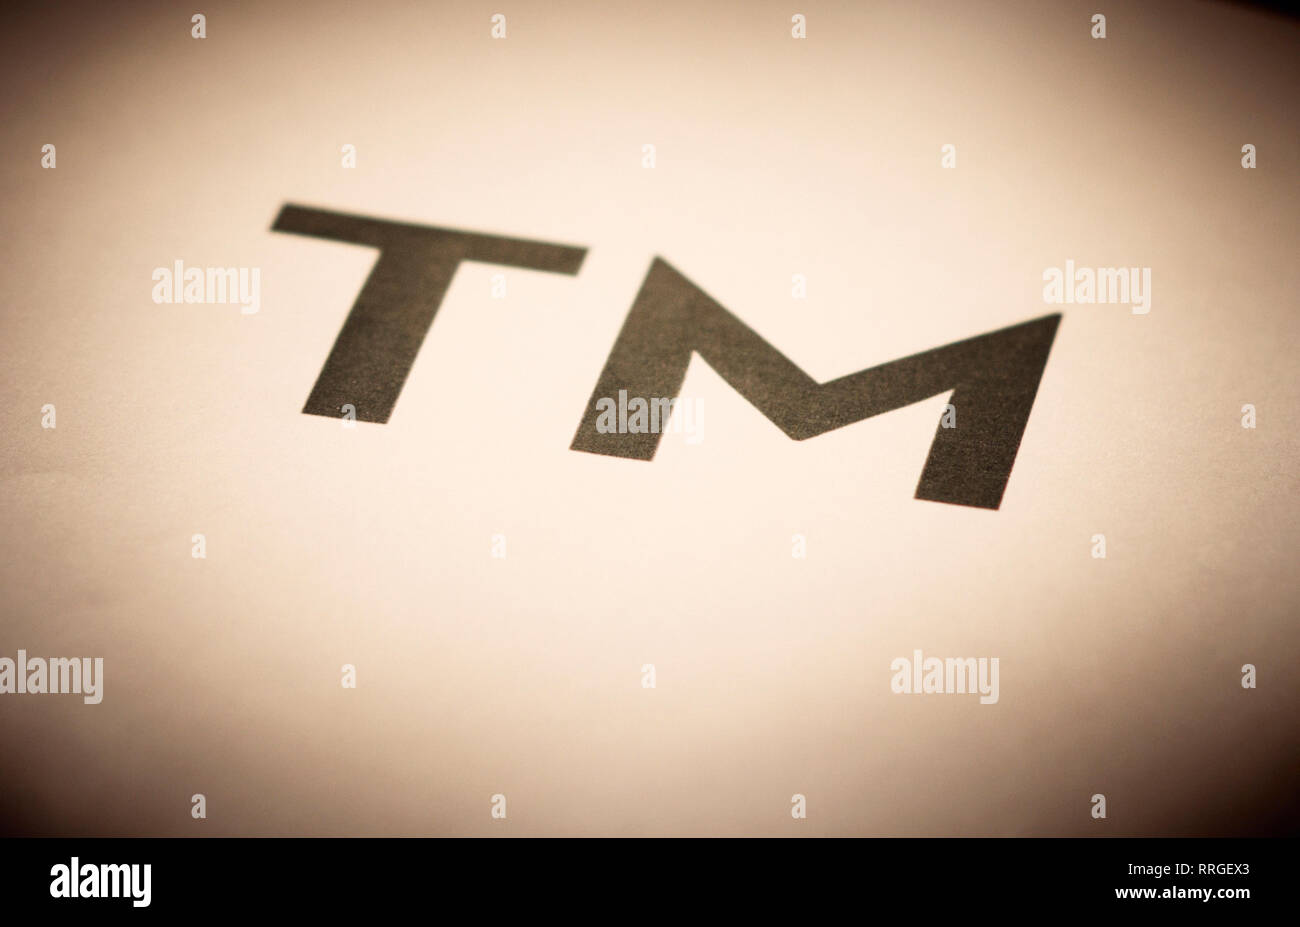 TM simbolo noto come un marchio è un simbolo per indicare che il precedente  marchio è un marchio. Di solito è utilizzato per i marchi non registrati  Foto stock - Alamy